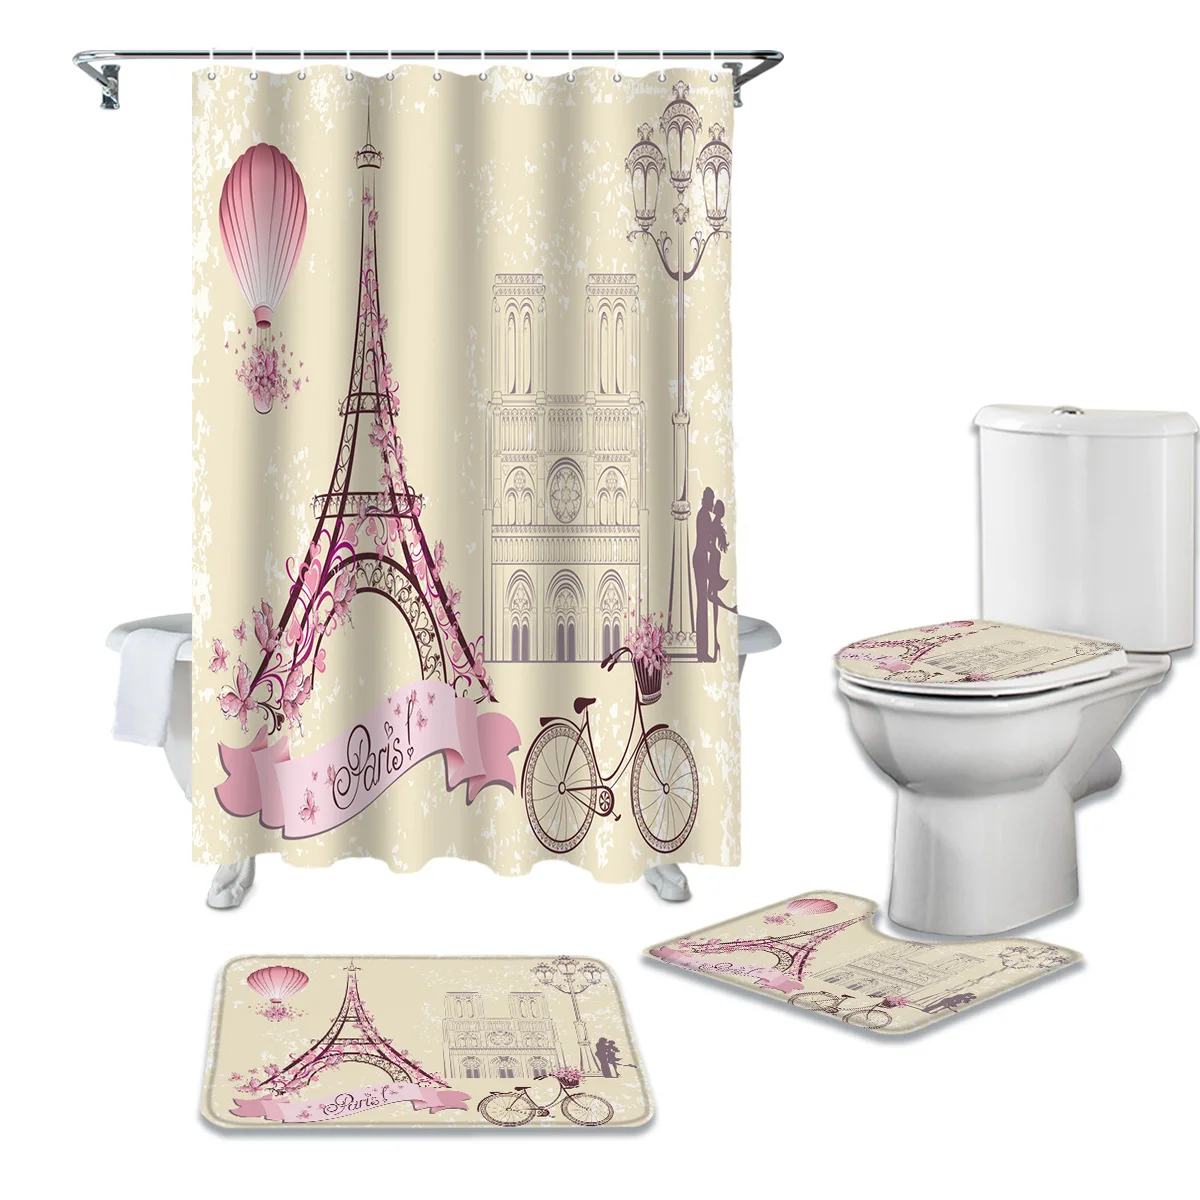 

Французская Парижская башня, занавеска для душа с воздушным шаром для велосипеда в стиле ретро, ковер, крышка для унитаза, коврик для ванной,...